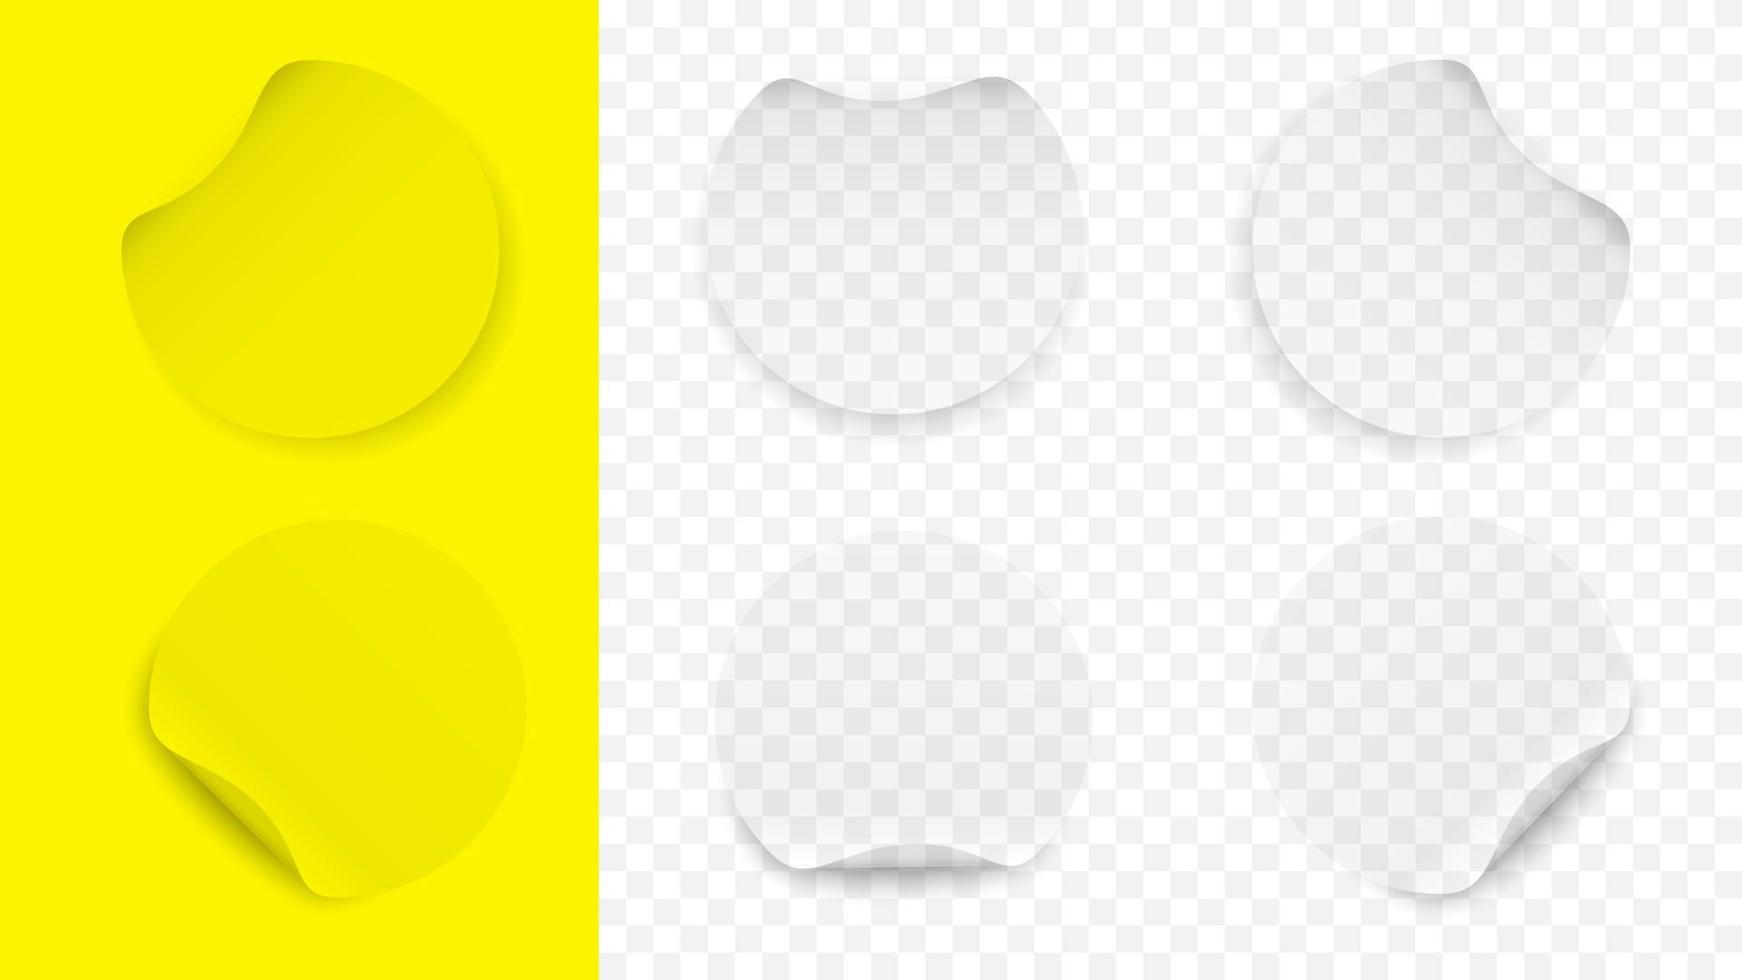 maquete de modelo de adesivos redondos enrolados. etiqueta amarela banners superfície branca para publicações e texto publicitário promoção de produtos da web e comunicação social vetorial vetor